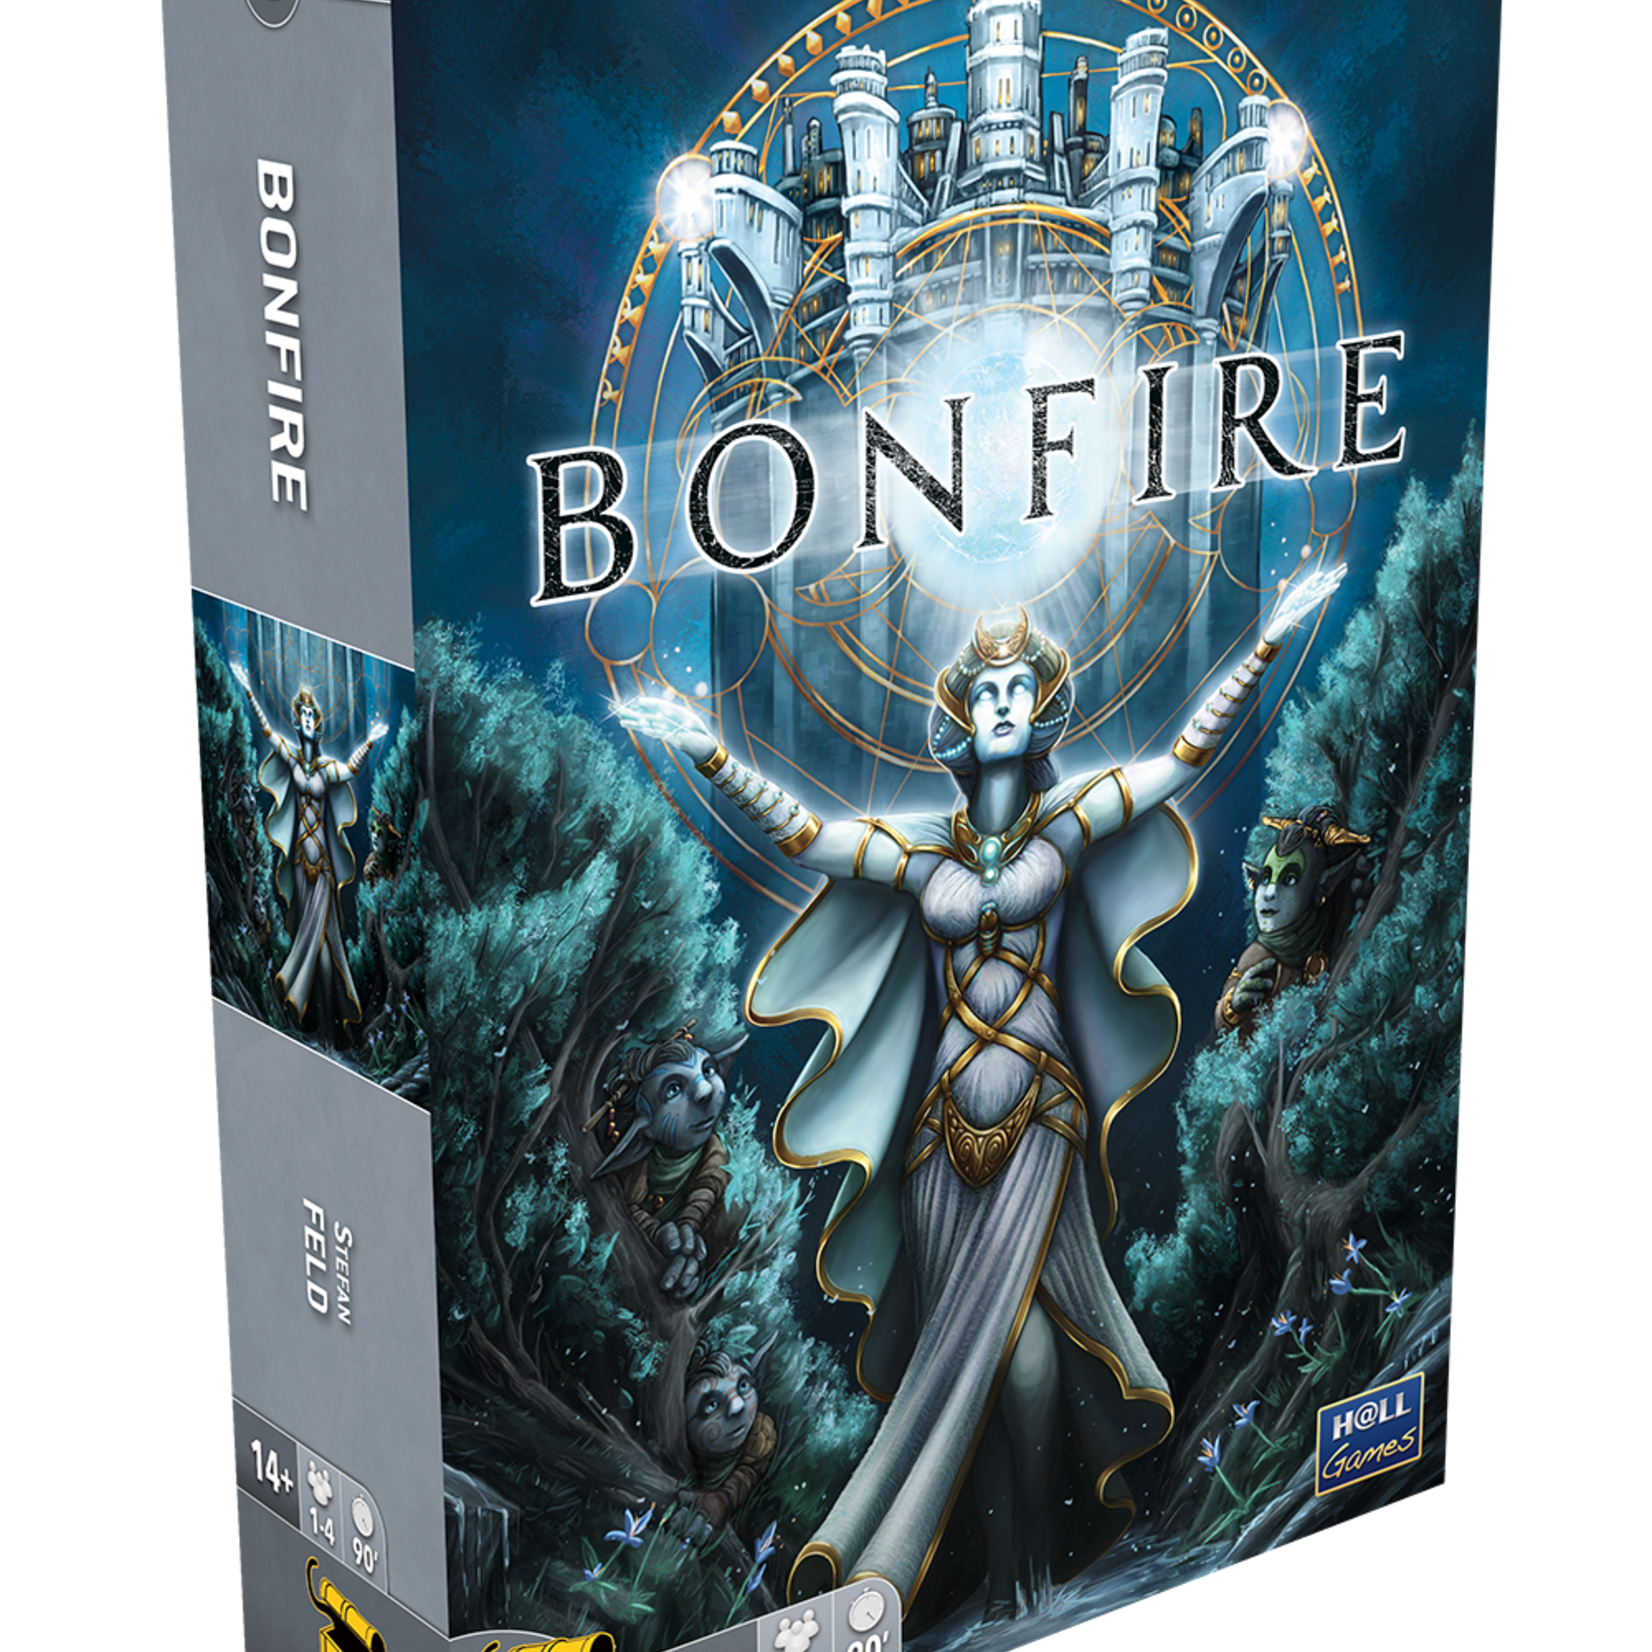 Matagot Bonfire (FR)